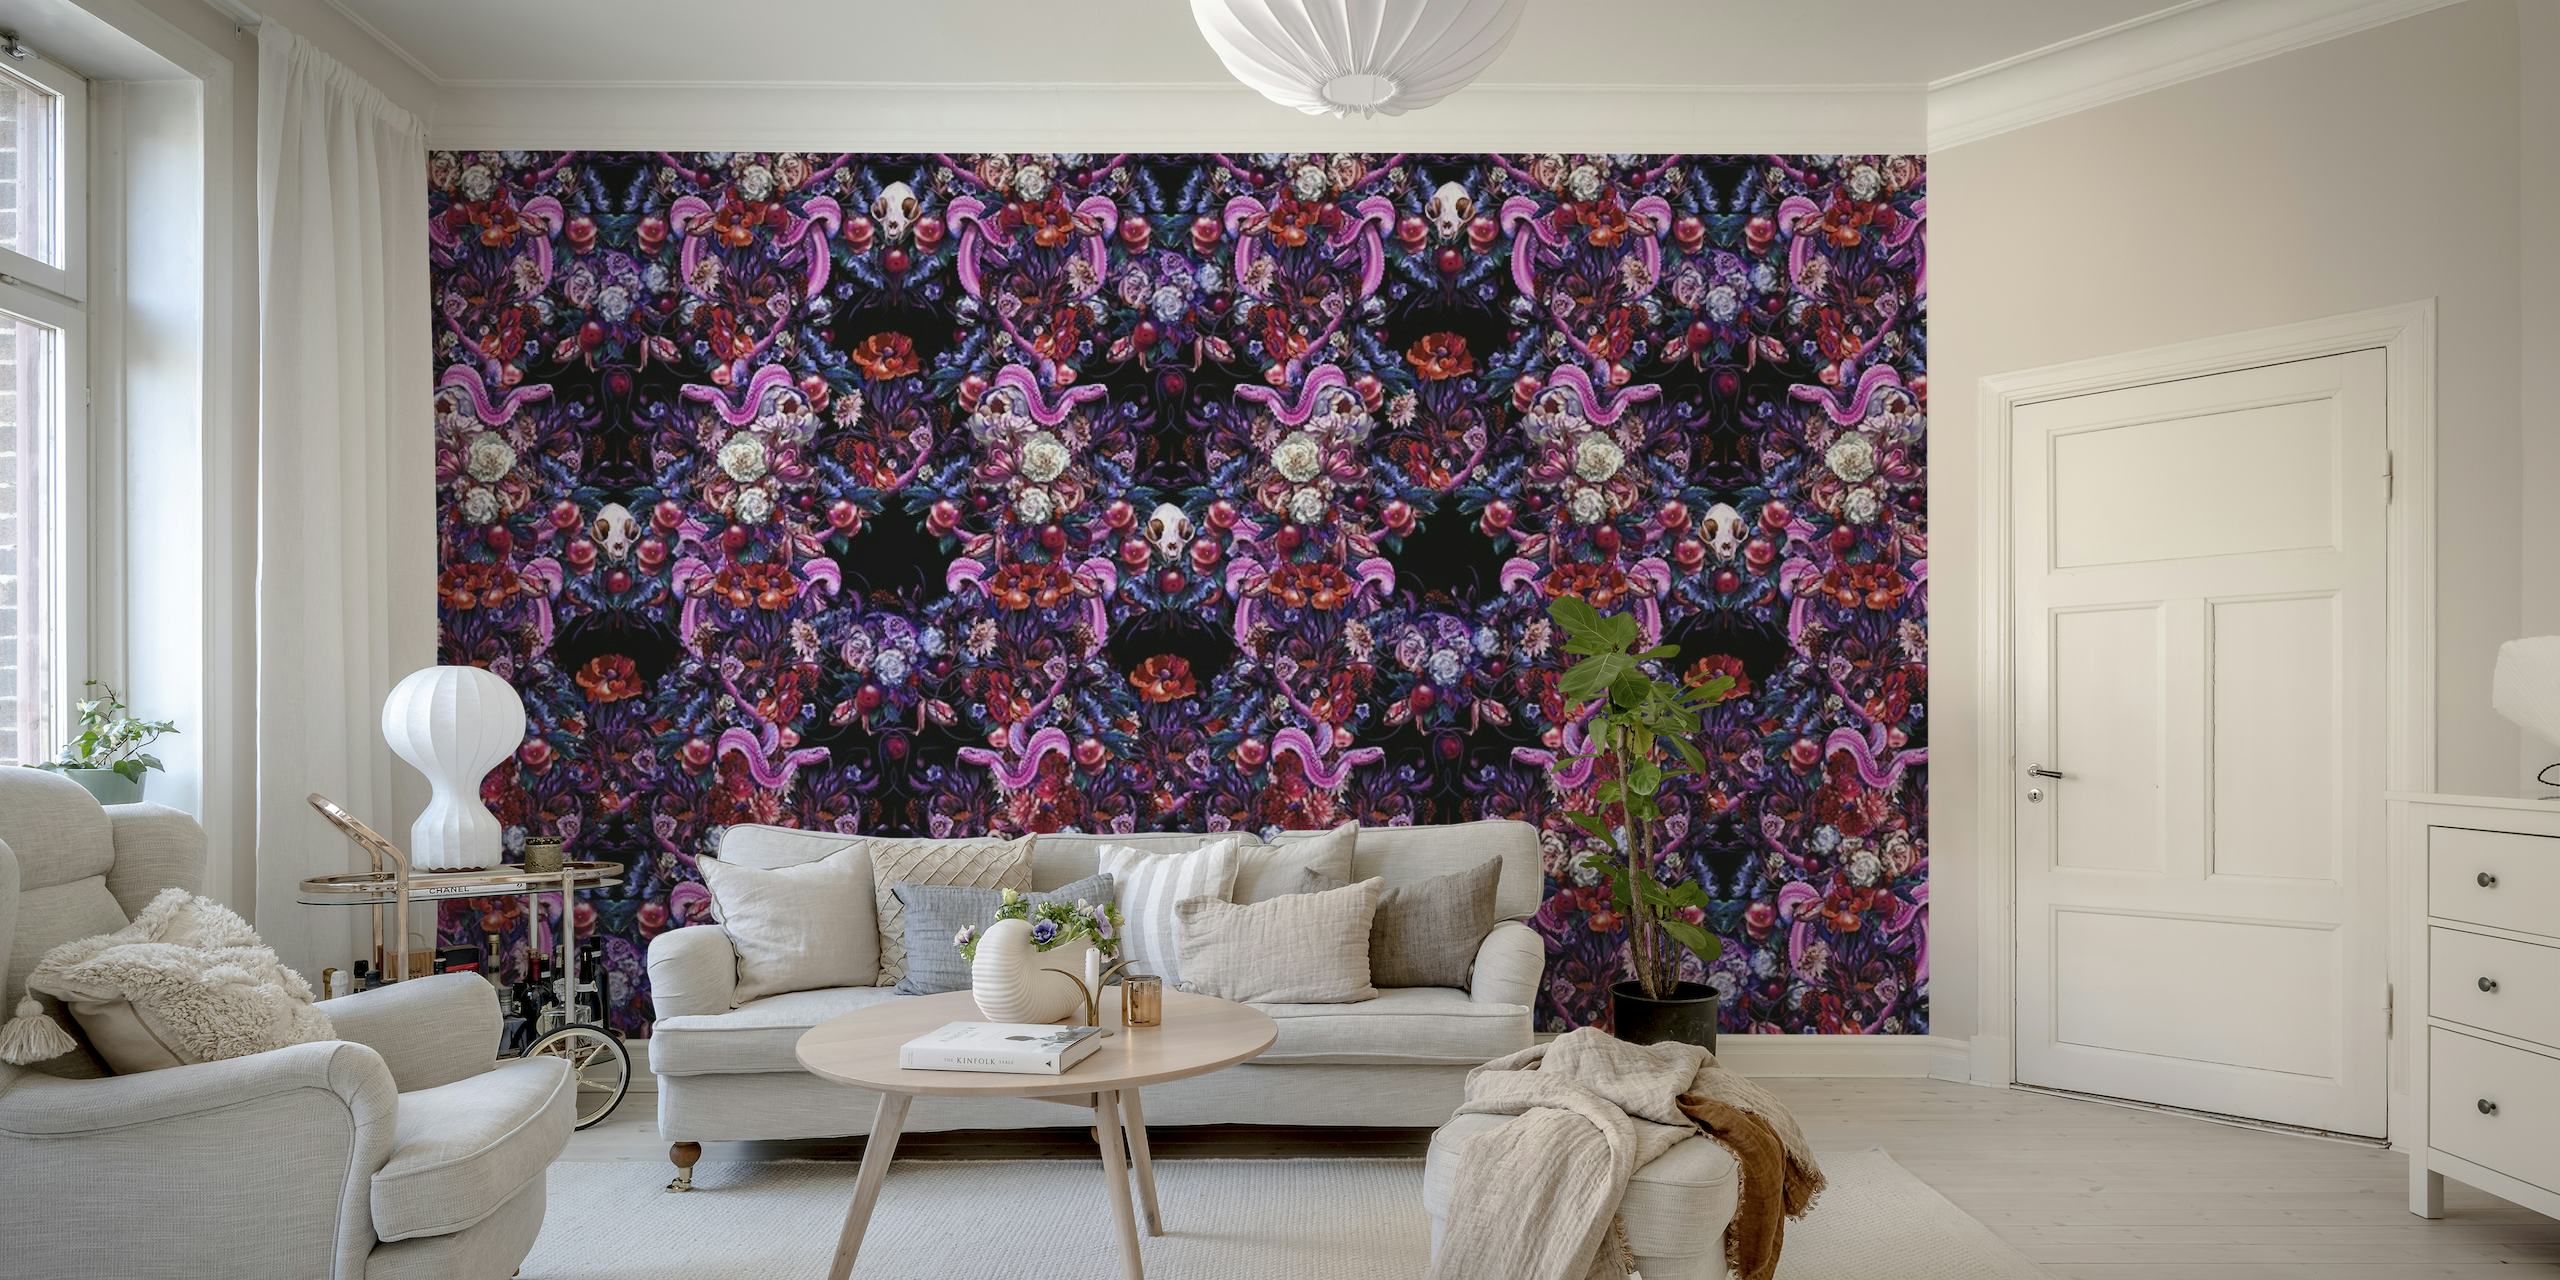 Gotisk-inspirerad tapet med ett symmetriskt mönster av ormar, dödskallar och blommor i nyanser av lila, rosa och blått